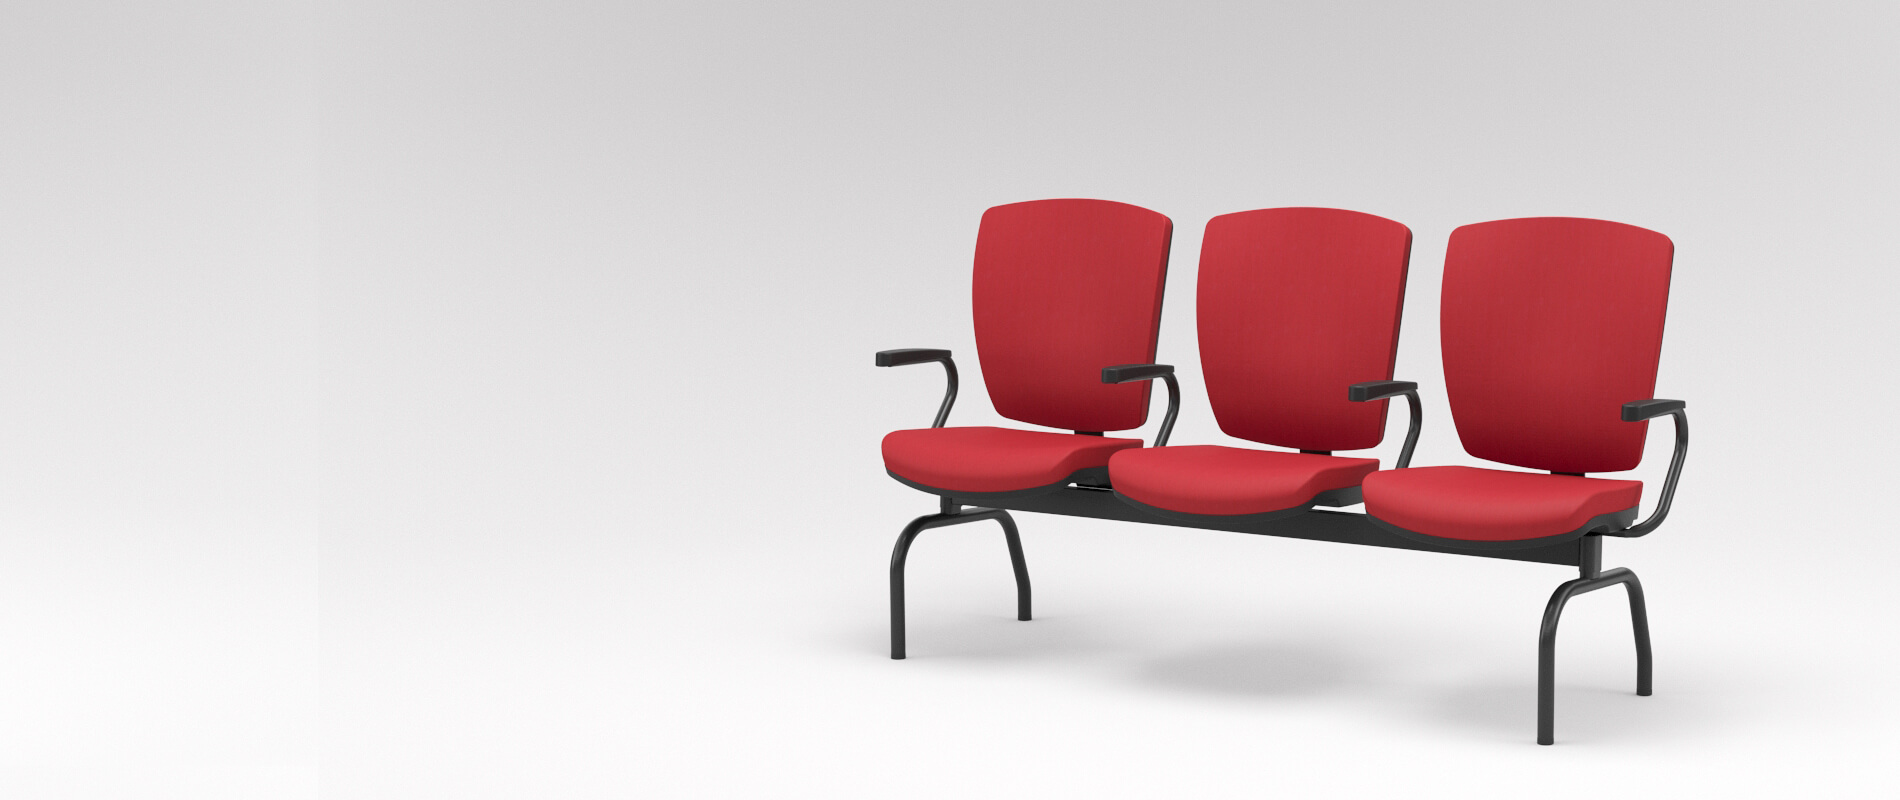 Linha Altrix da Plaxmetal: Escolha a Cadeira Ideal para Cada Ambiente Corporativo | Codistoke